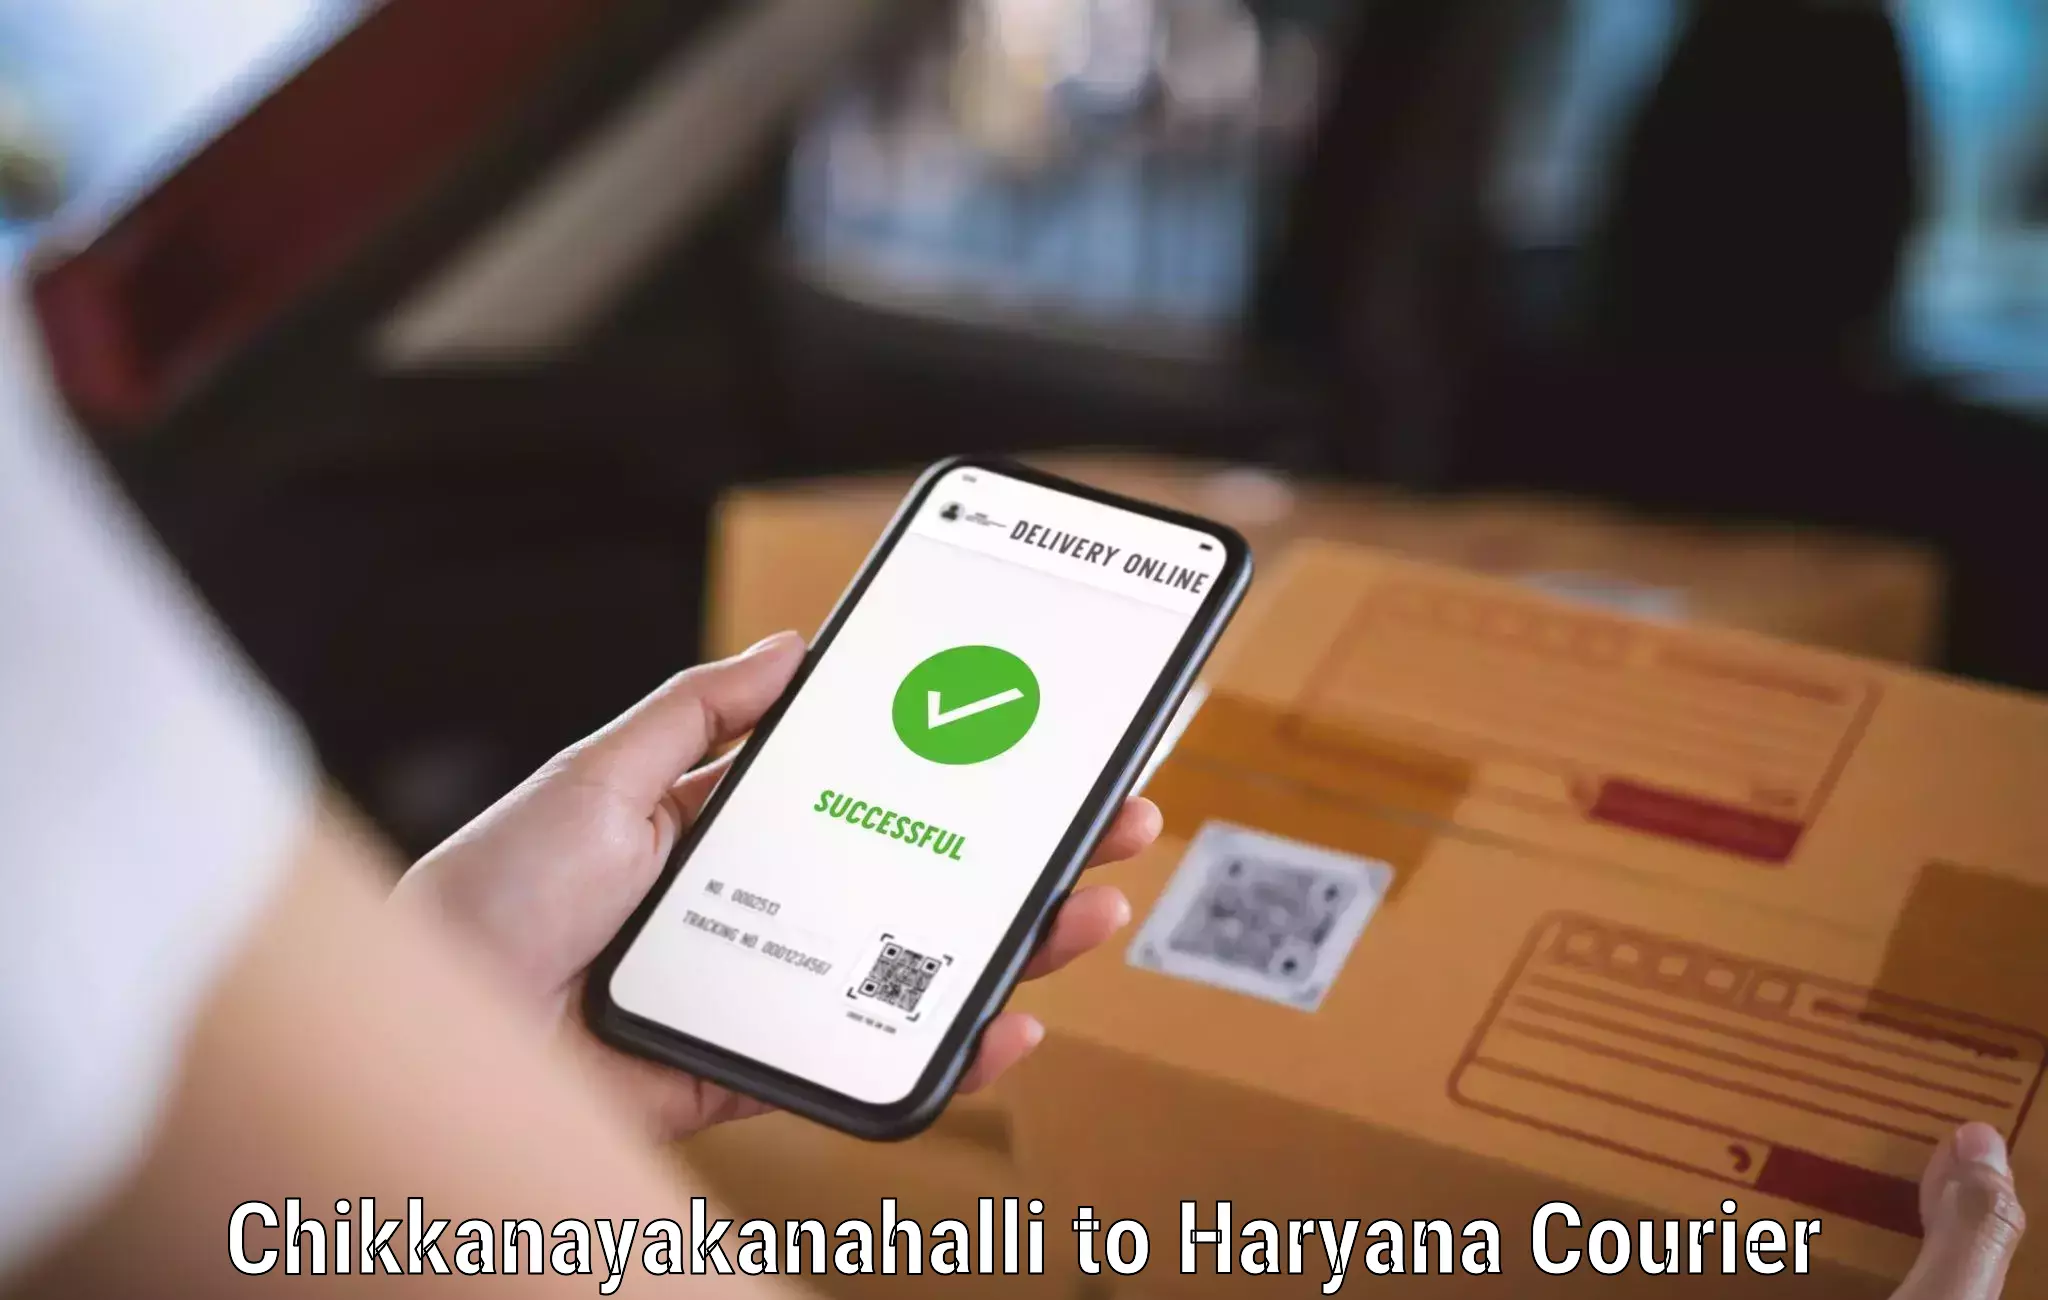 Professional courier handling Chikkanayakanahalli to Jhajjar